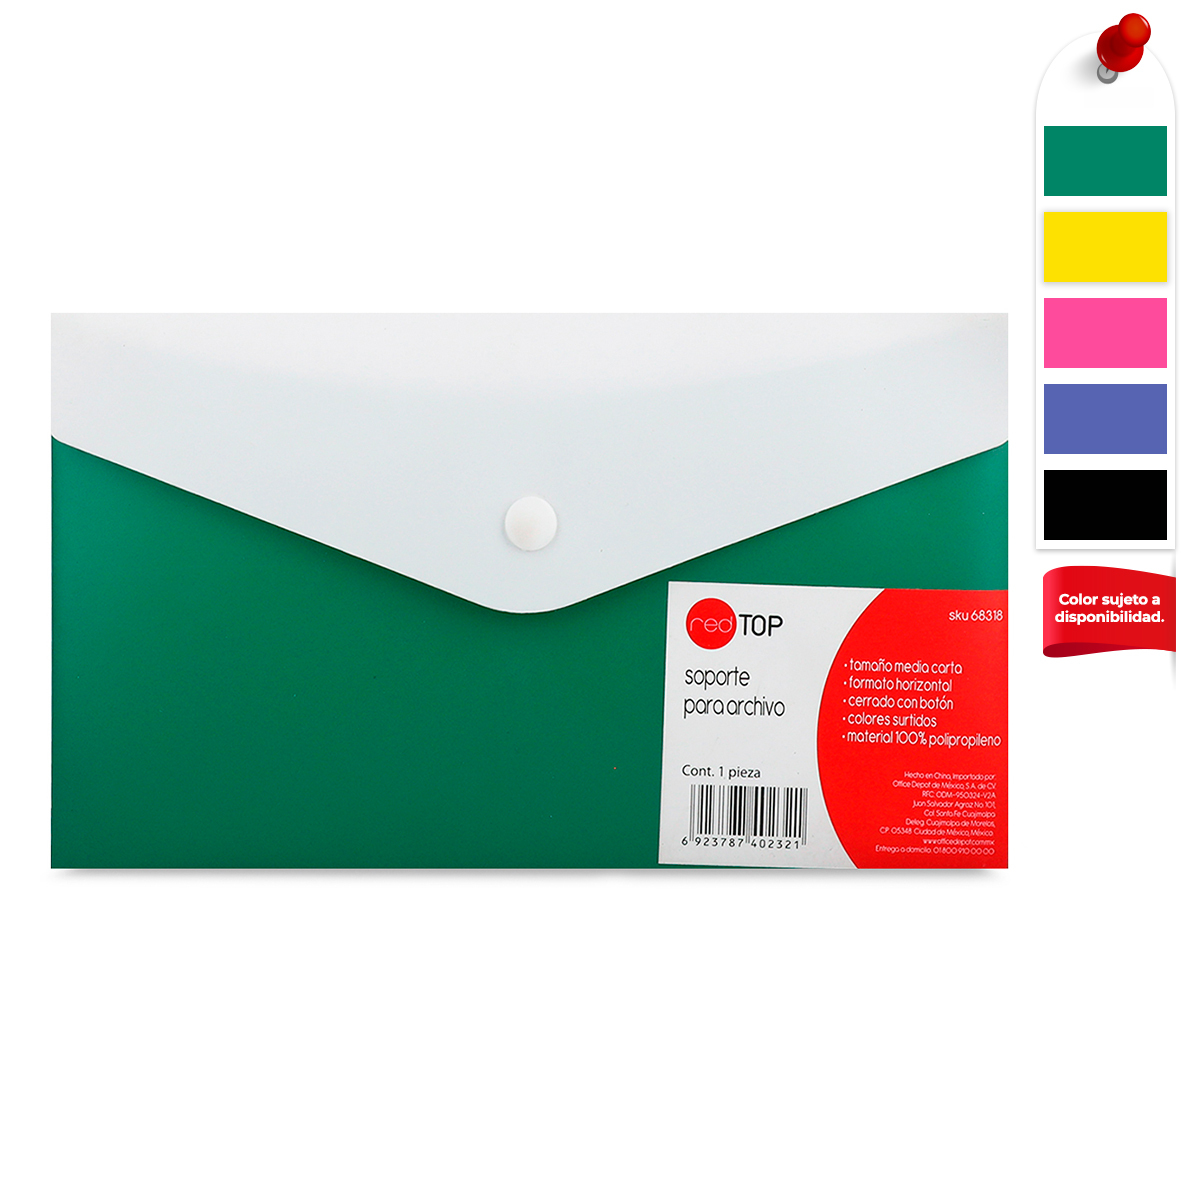 Sobre de Plástico para Archivo Media Carta Red Top Horizontal Varios Colores  | Office Depot Mexico